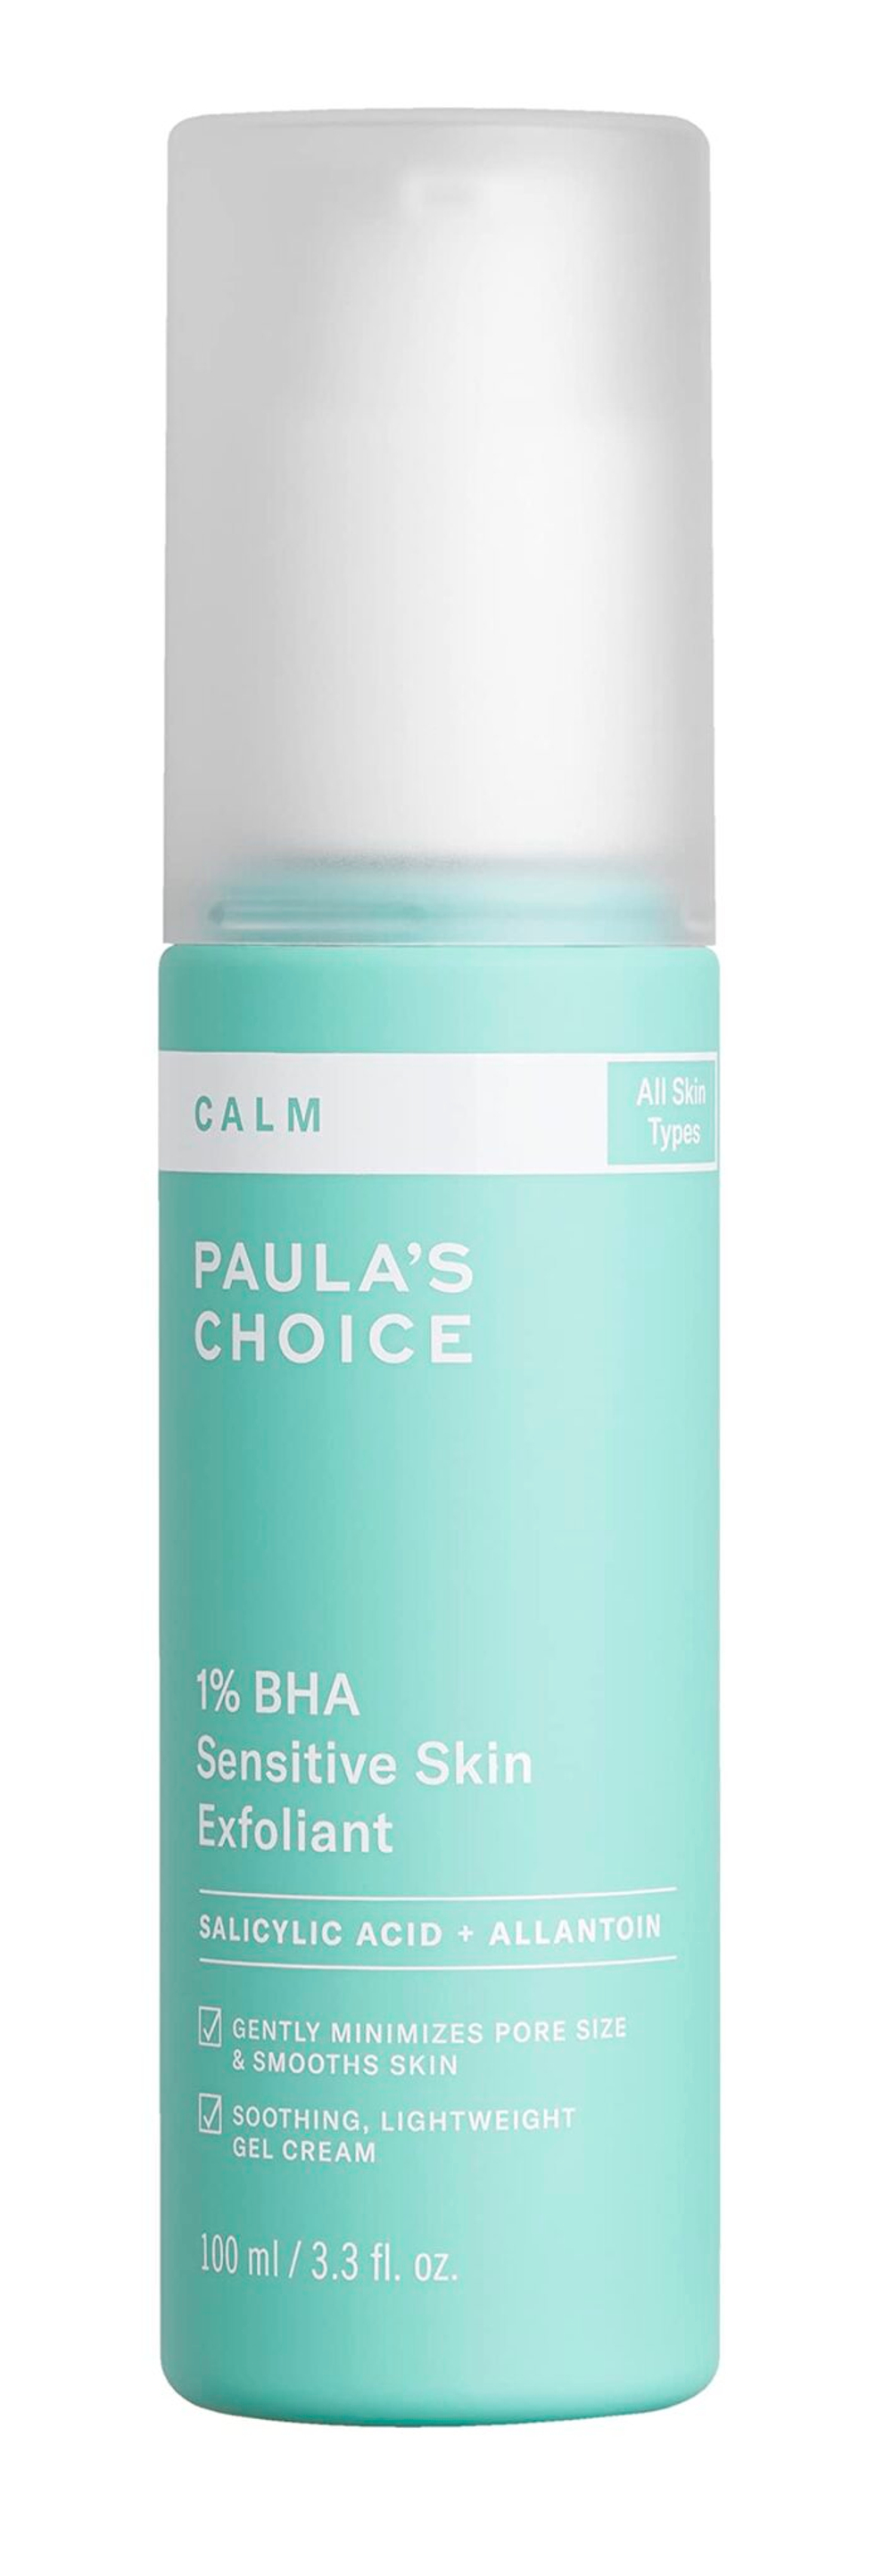 Эксфолиант Paula's Choice Calm 1% BHA для чувствительной кожи 100 мл